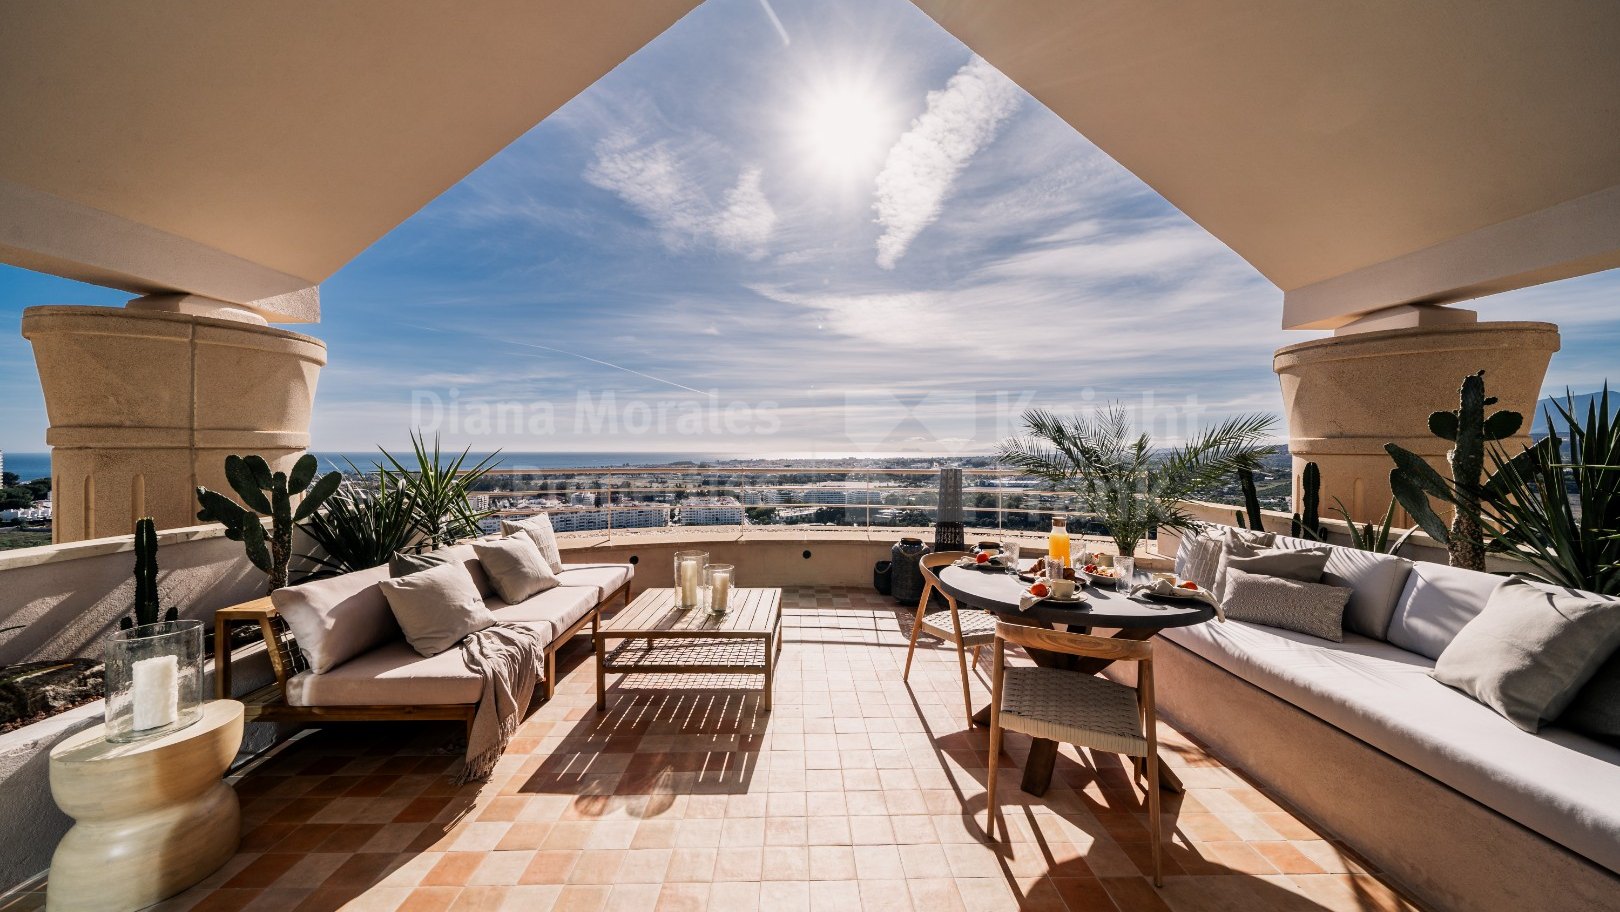 Magna Marbella, Ático dúplex de diseño escandinavo con vistas panorámicas en el Valle del Golf